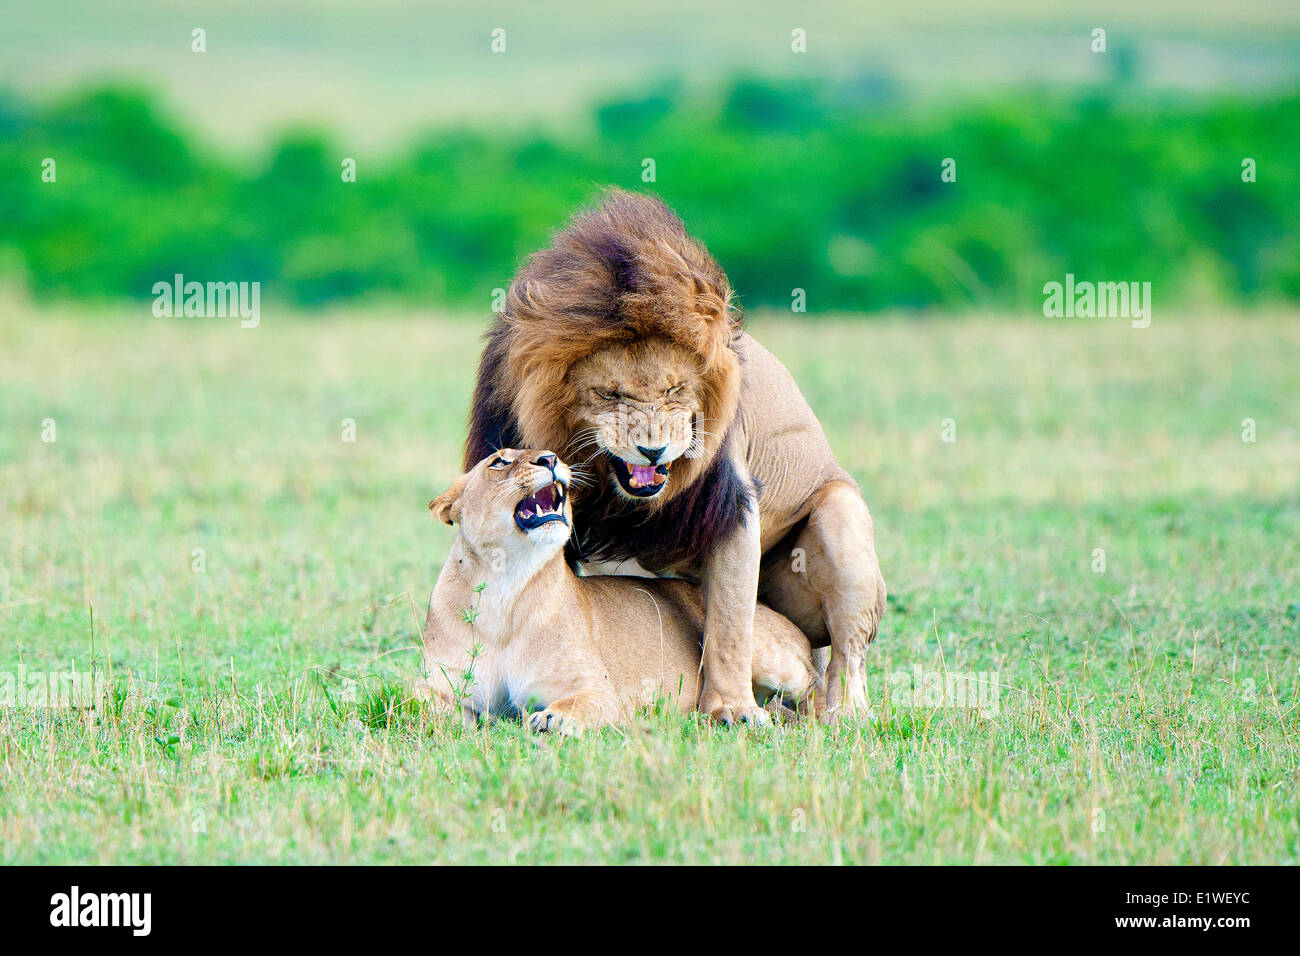 L'accouplement des lions (Panthera leo), Masai Mara, Kenya, Afrique de l'Est Banque D'Images